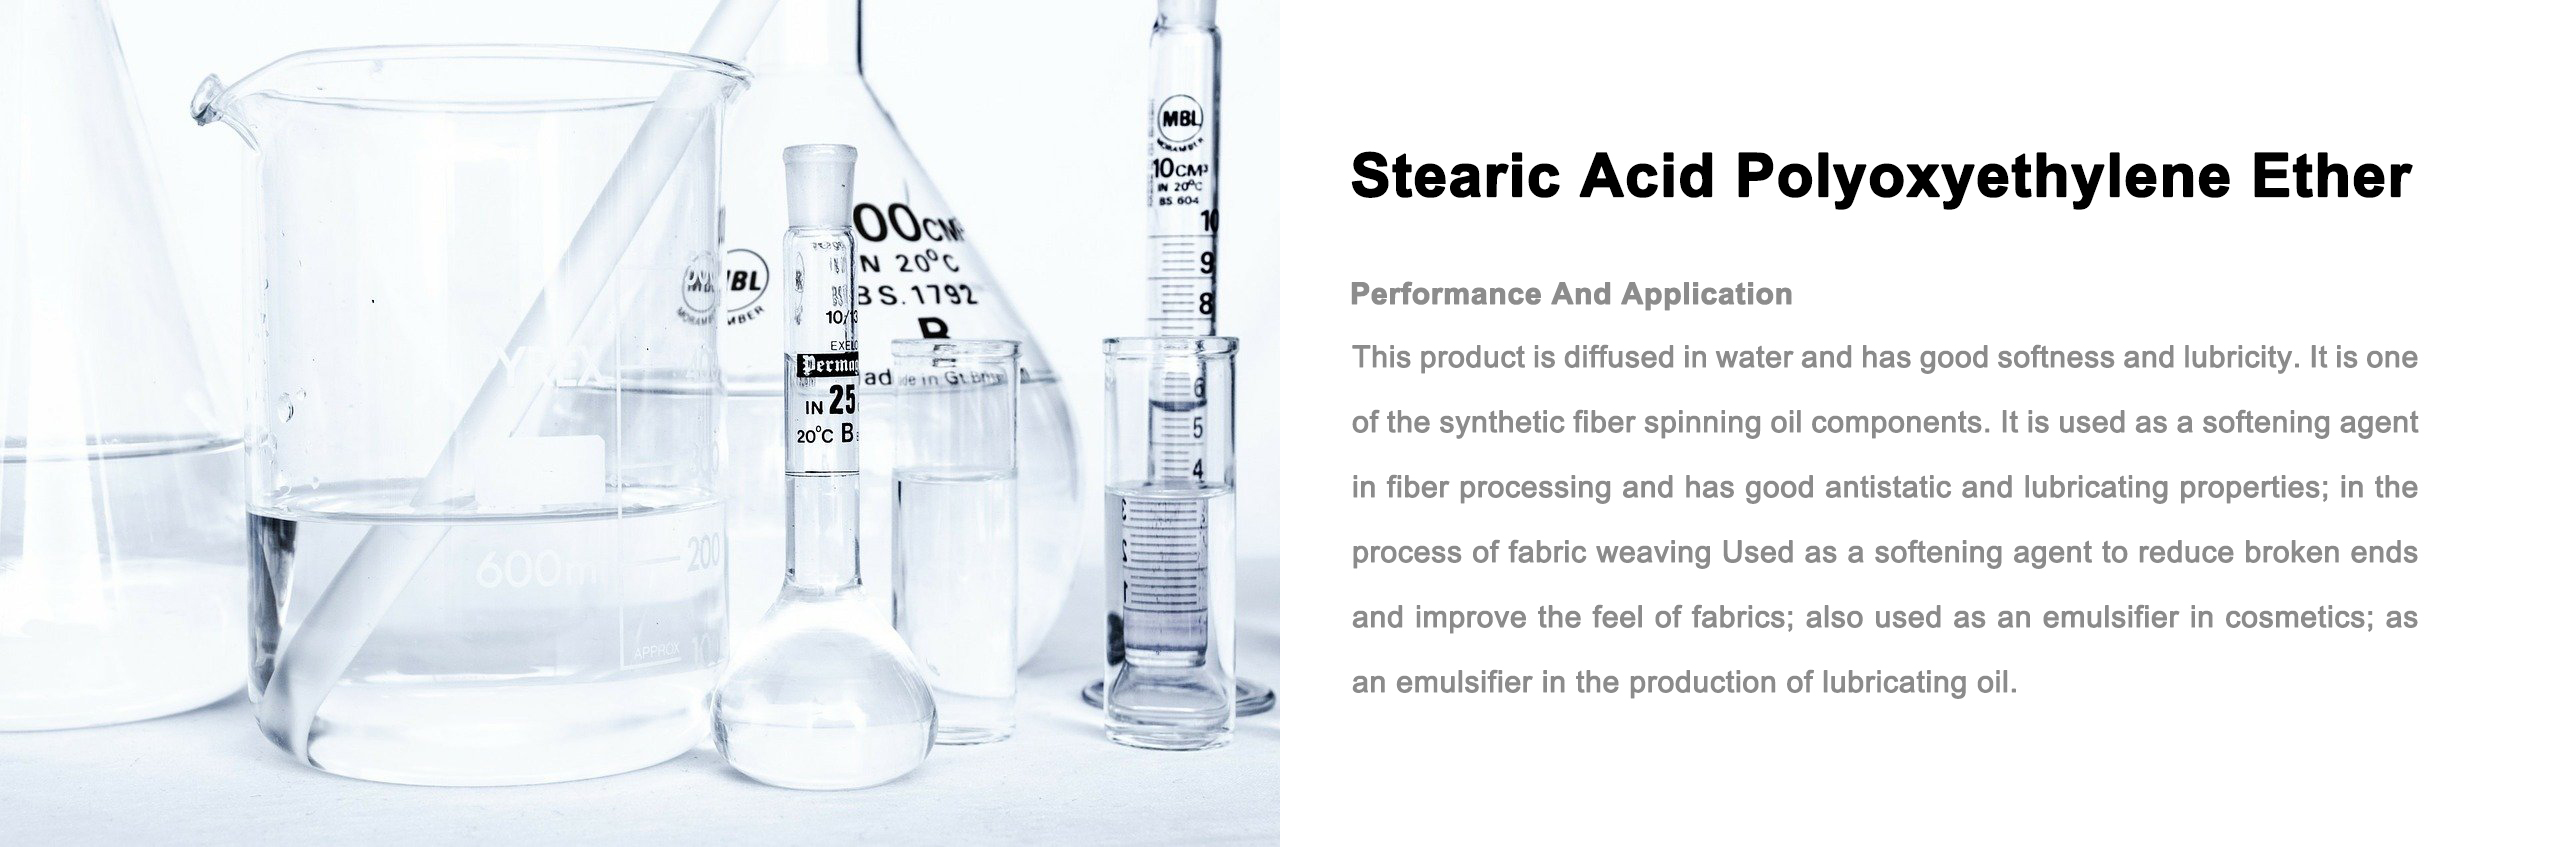 stearic-acid-polyo